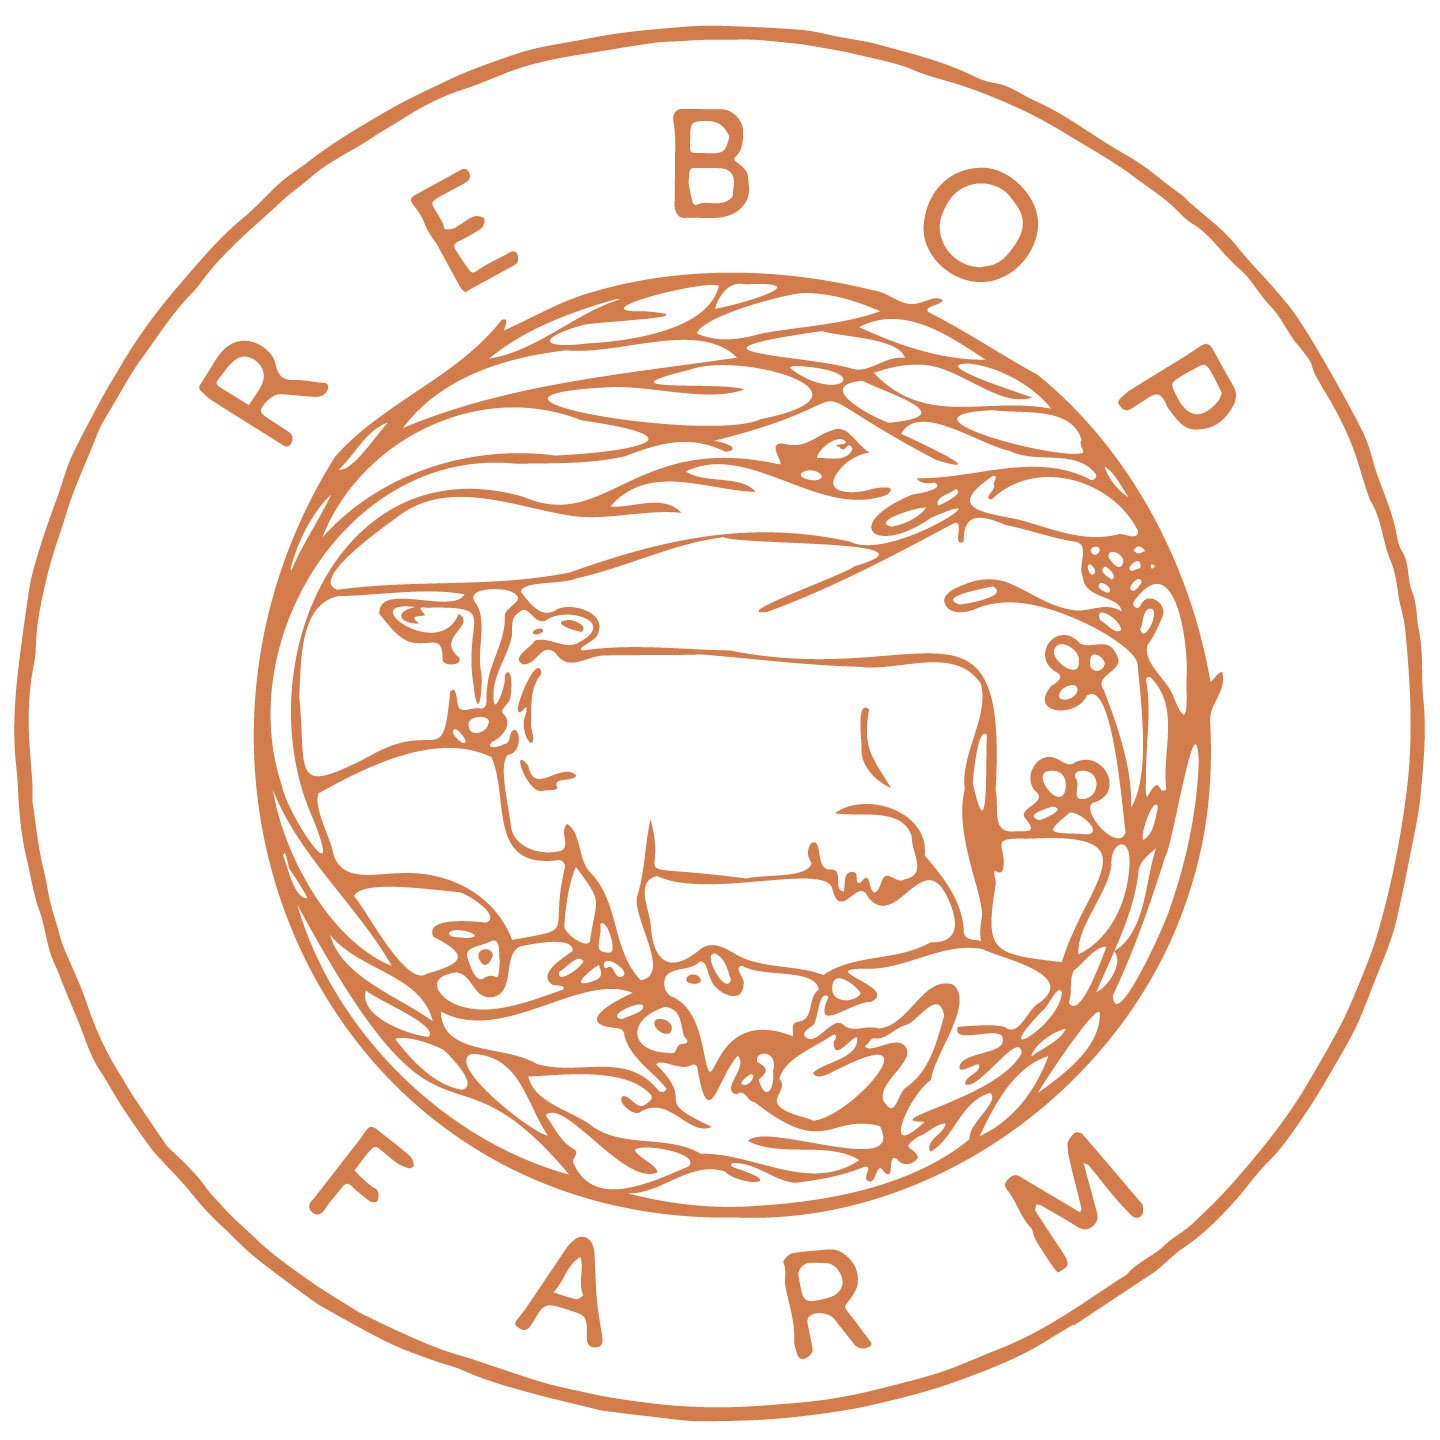 Rebop Farm